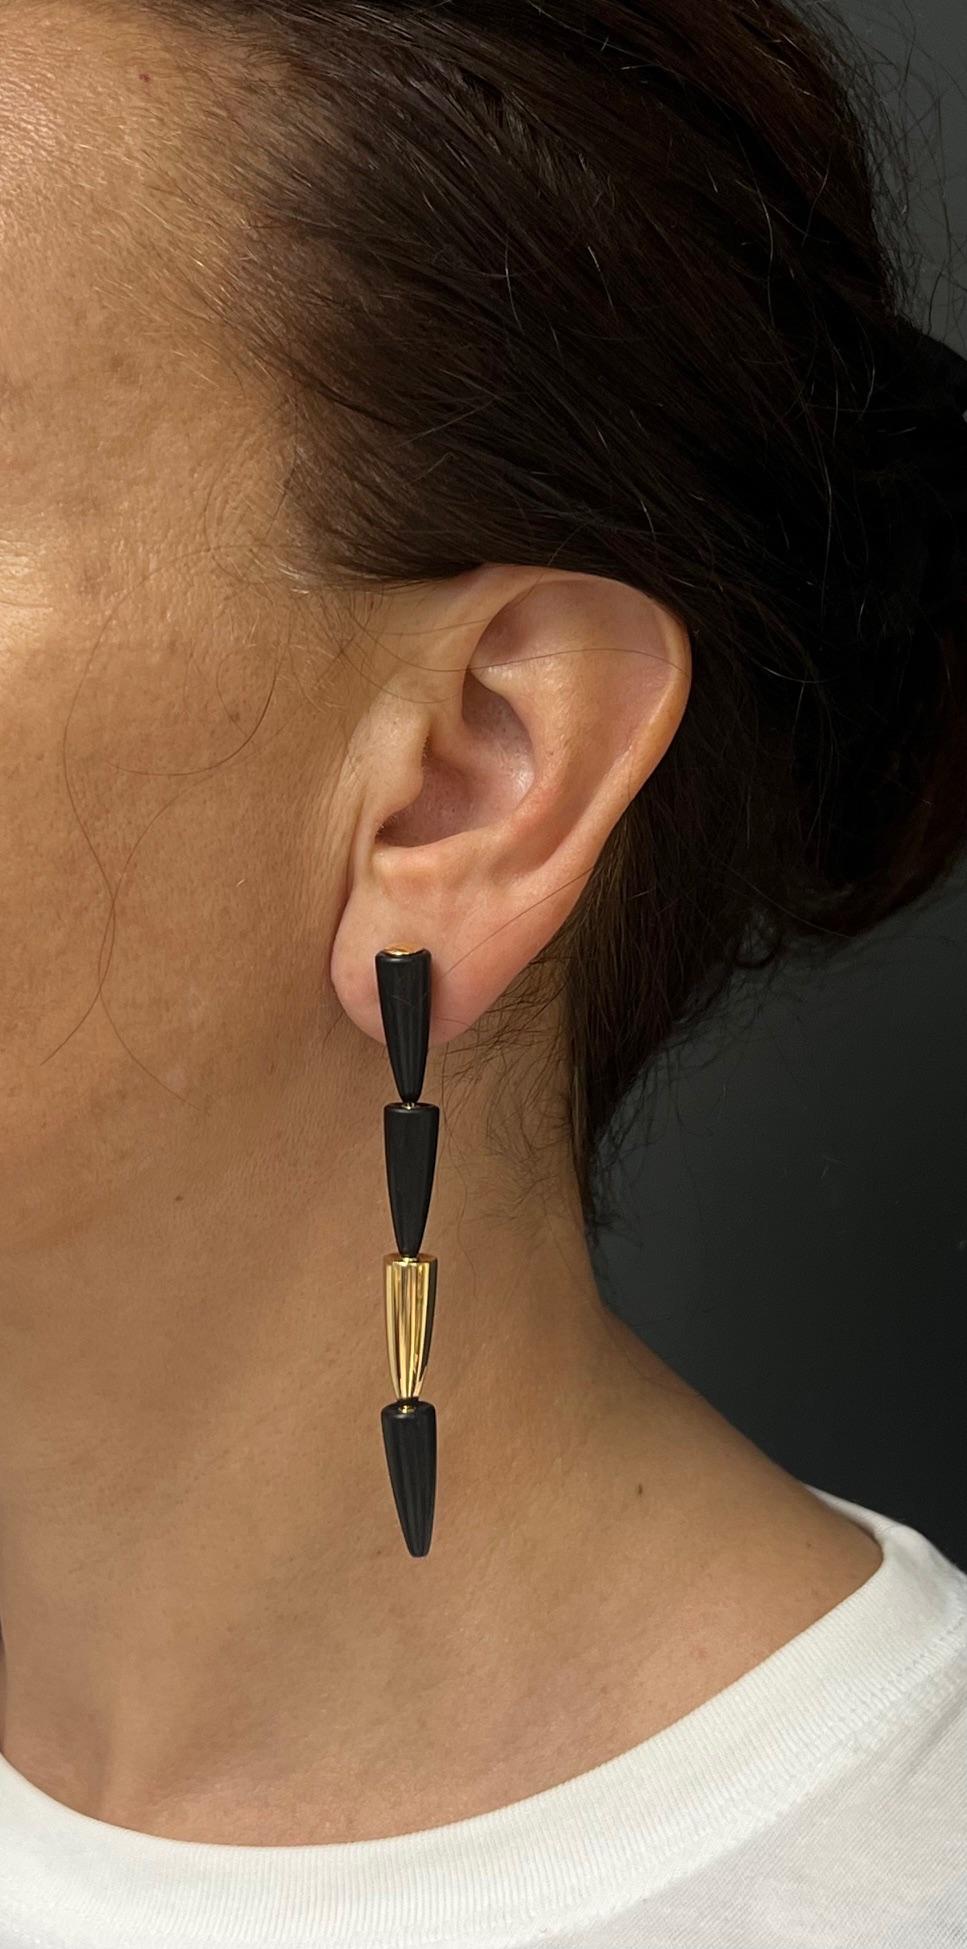 Futuristische Ohrringe von Vhernier aus der Kollektion Calla, aus 18 Karat Gold und Ebenholz. Langgestreckte Silhouette-Ohrringe bestehen aus vier vertikal ineinander geschachtelten Kegeln. Ein seidenglänzender Goldkegel im Wechsel mit drei